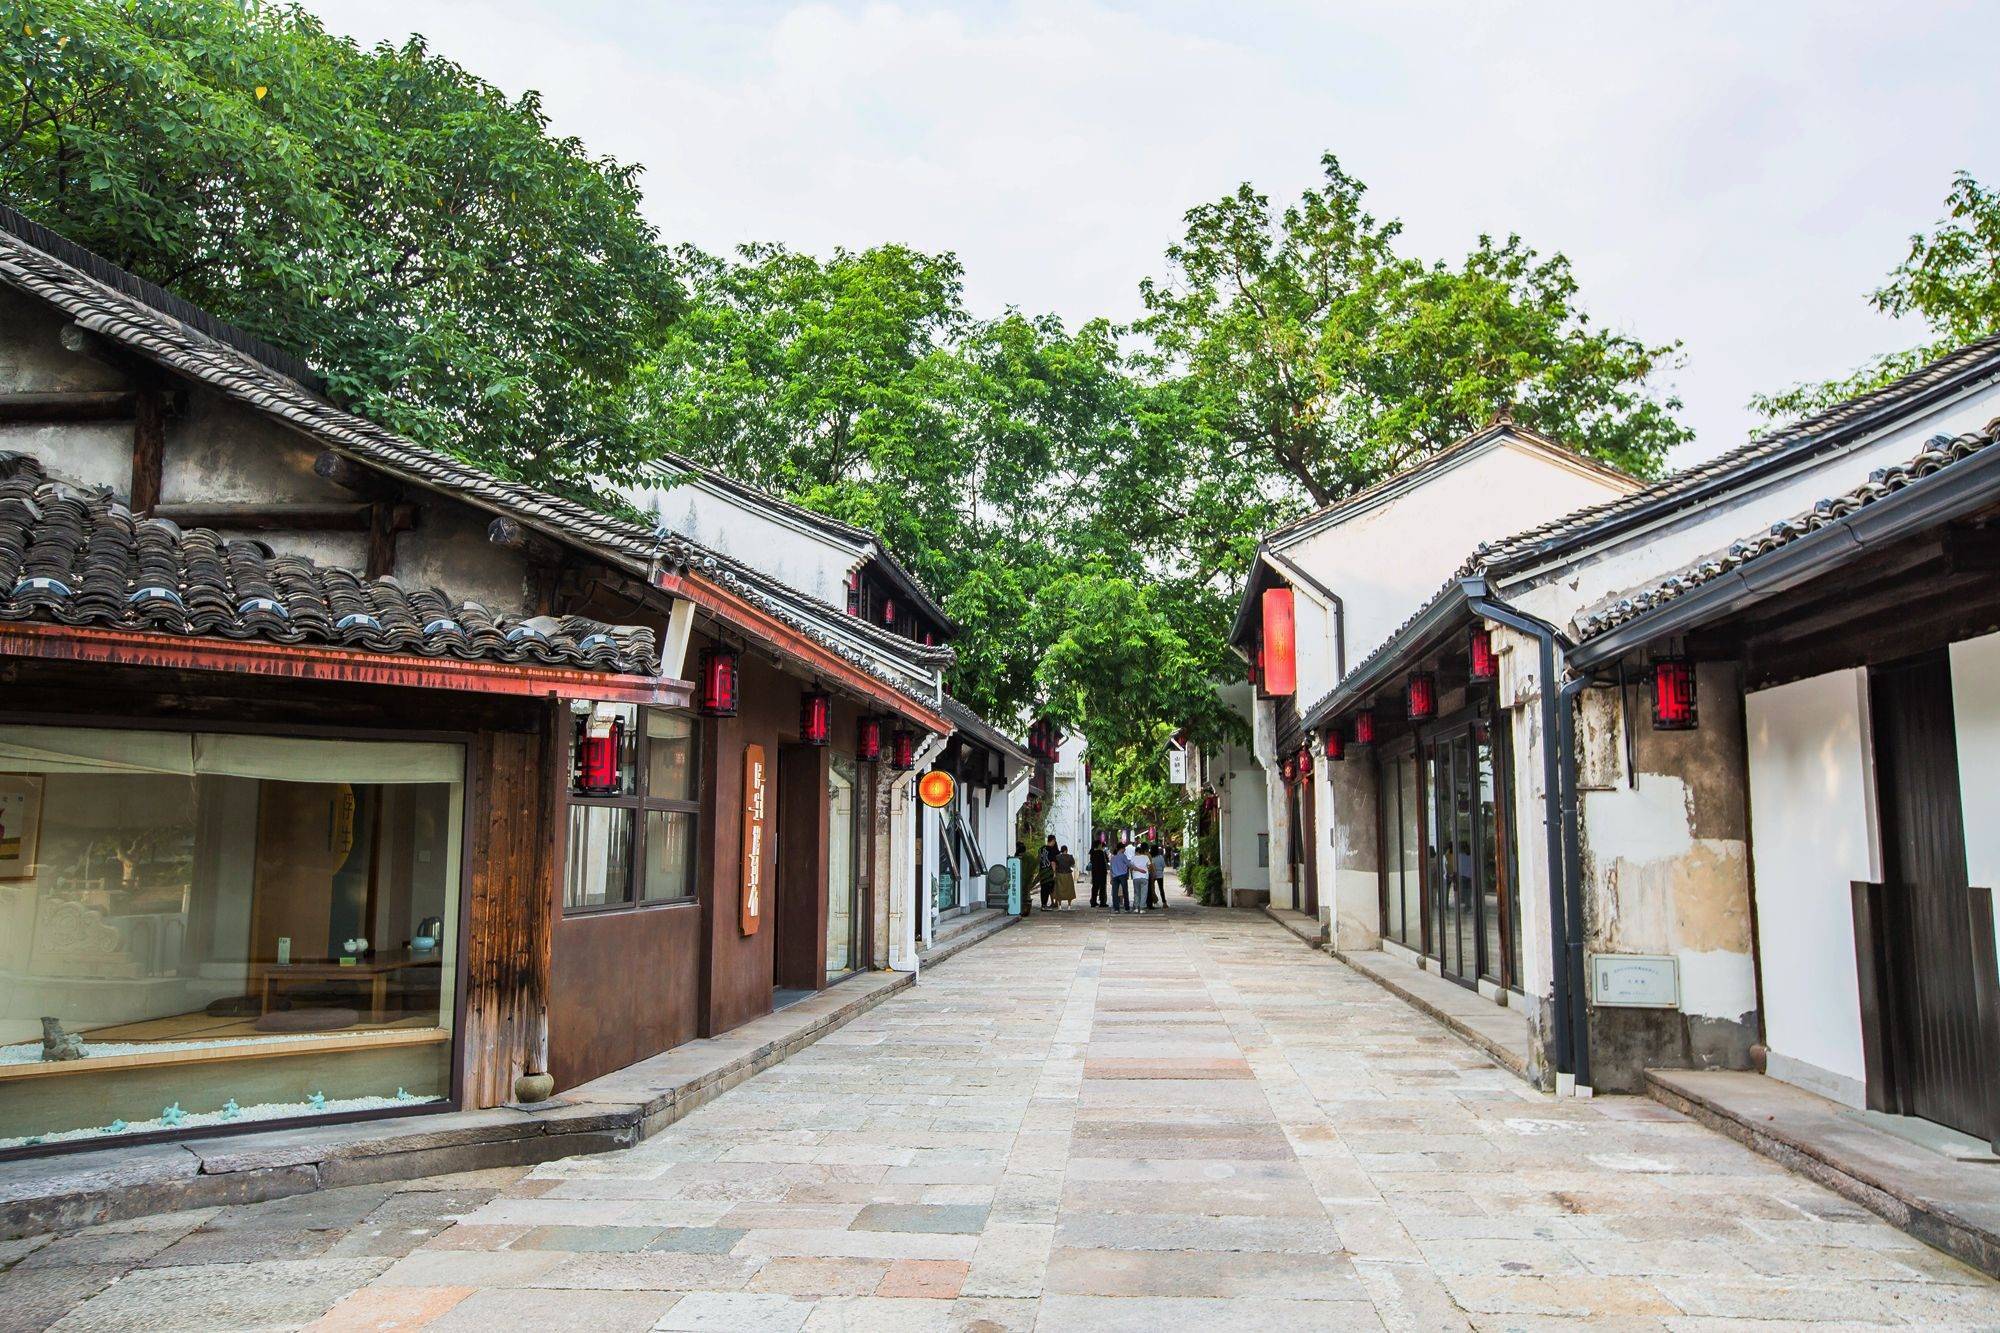 杭州桥西历史文化街区,历史悠久,这里有老杭州的非遗生活